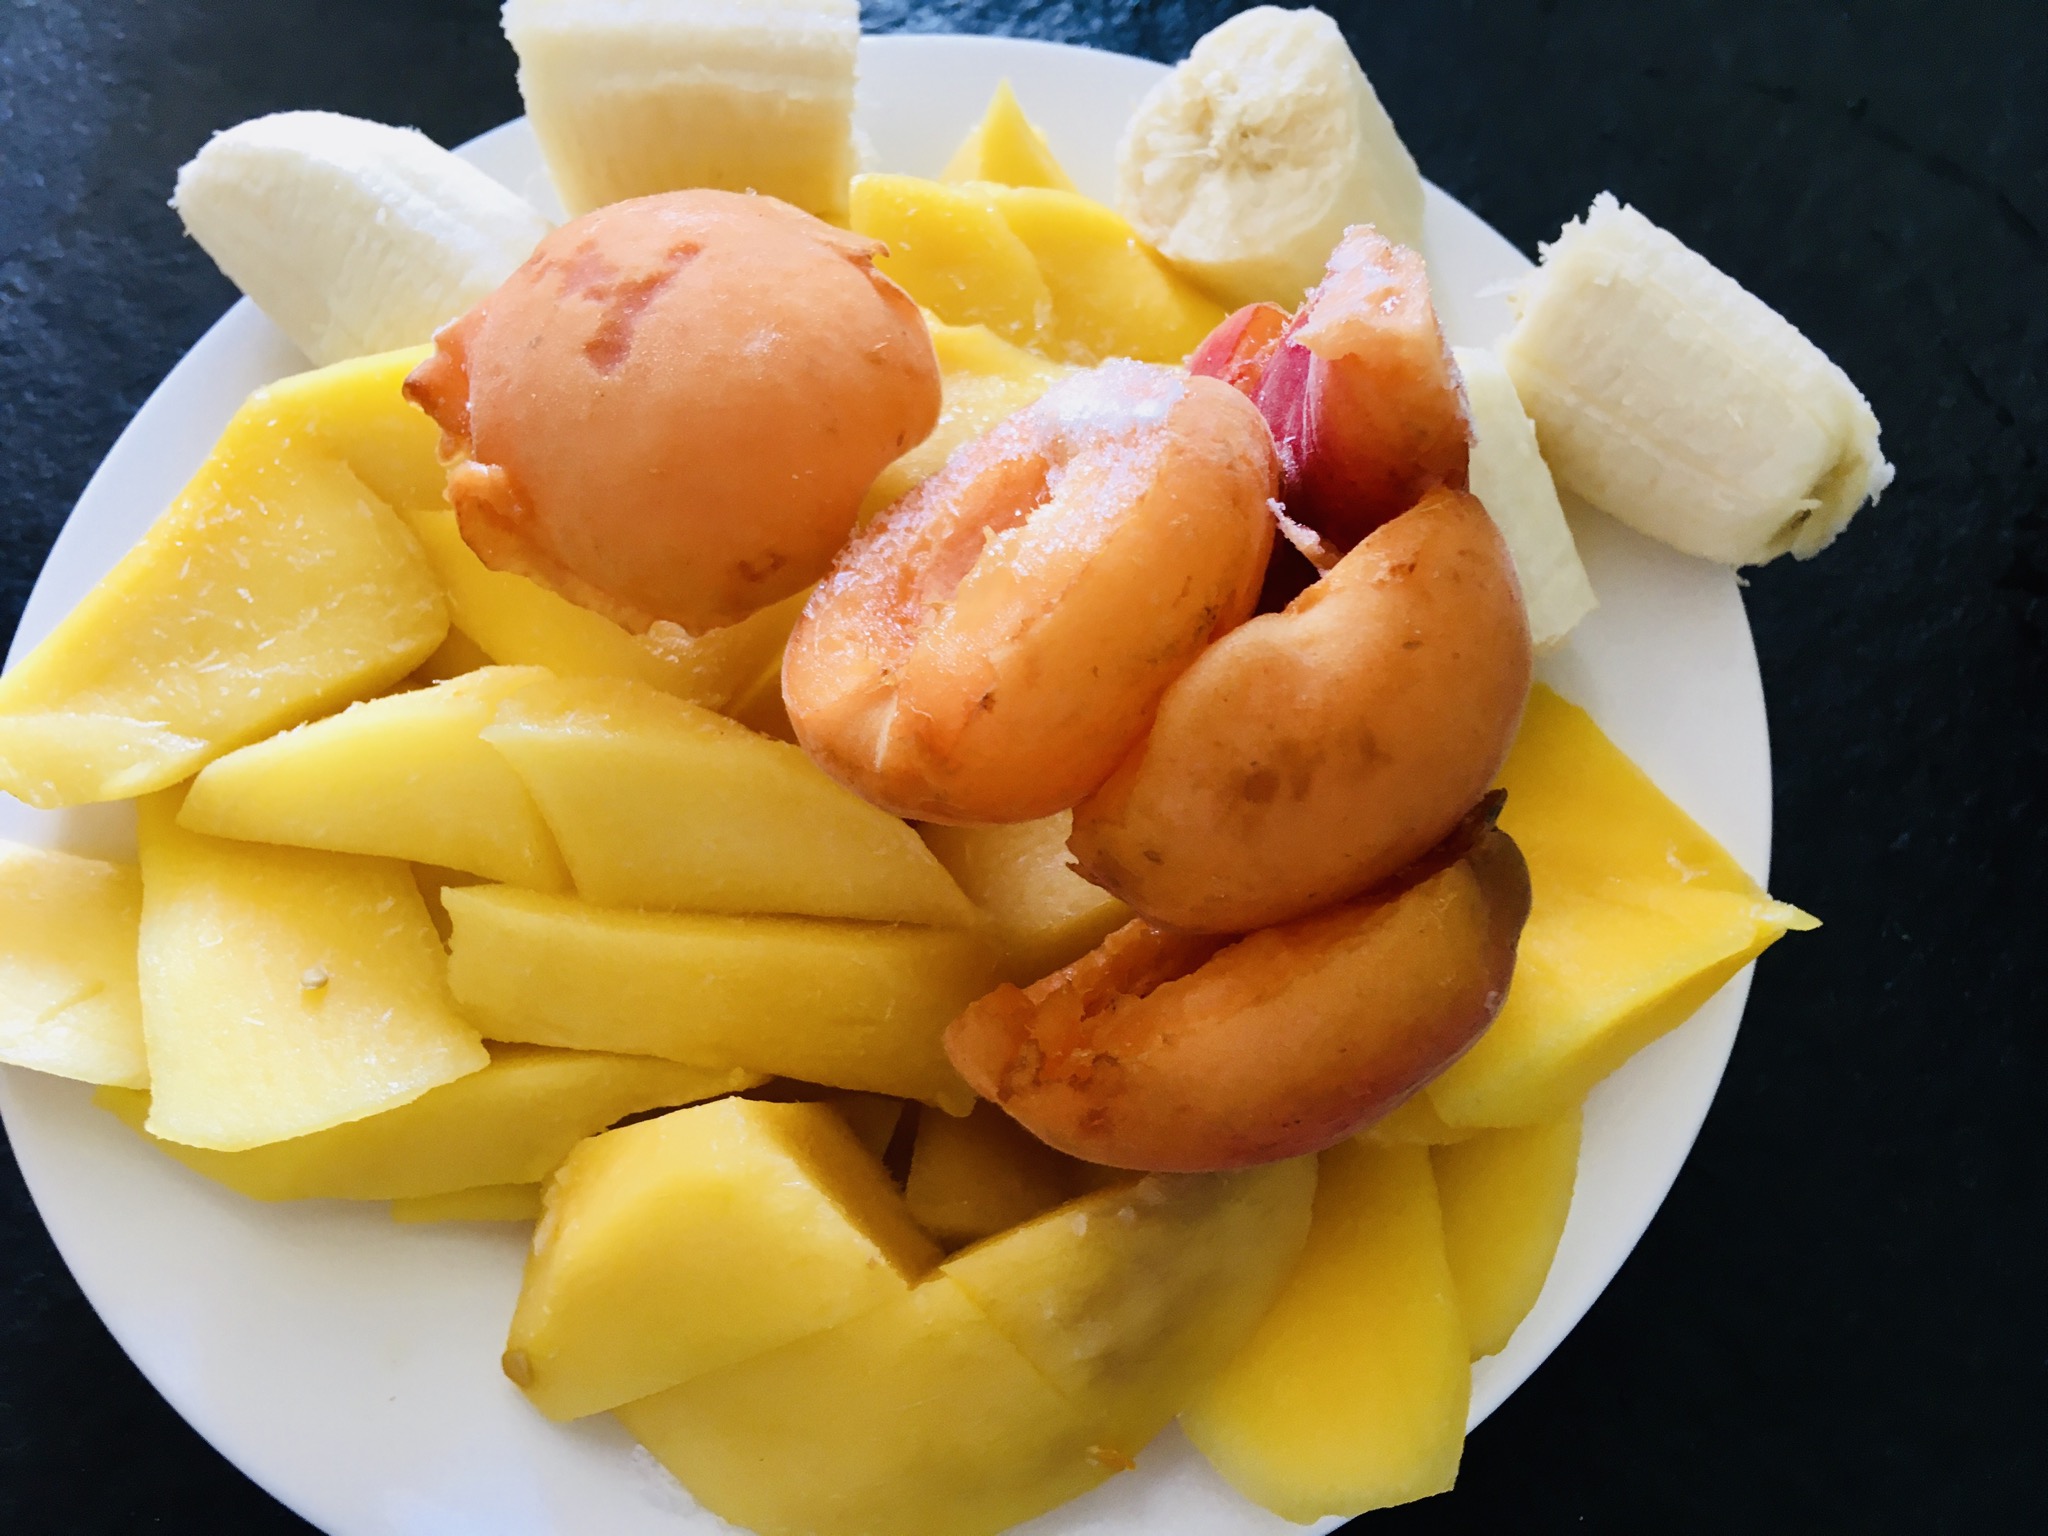 Bild zum Schritt 1 für das Bastel- und DIY-Abenteuer für Kinder: 'Die Früchte eurer Wahl einfrieren. Wir hatten heute Mango, Bananen...'